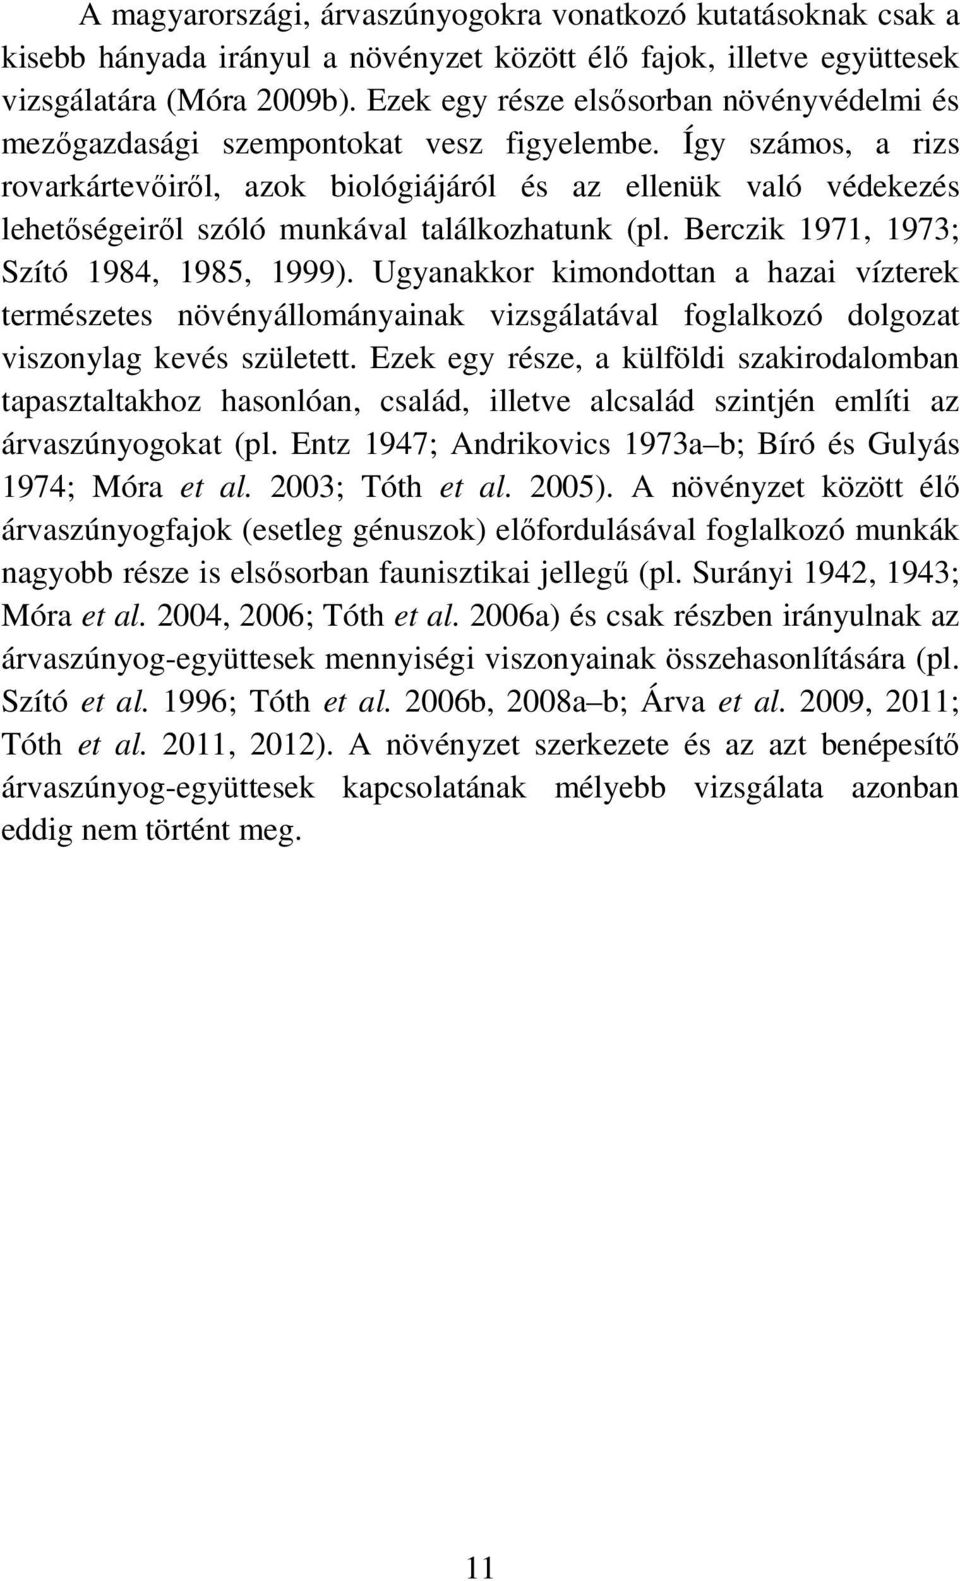 Így számos, a rizs rovarkártevıirıl, azok biológiájáról és az ellenük való védekezés lehetıségeirıl szóló munkával találkozhatunk (pl. Berczik 1971, 1973; Szító 1984, 1985, 1999).